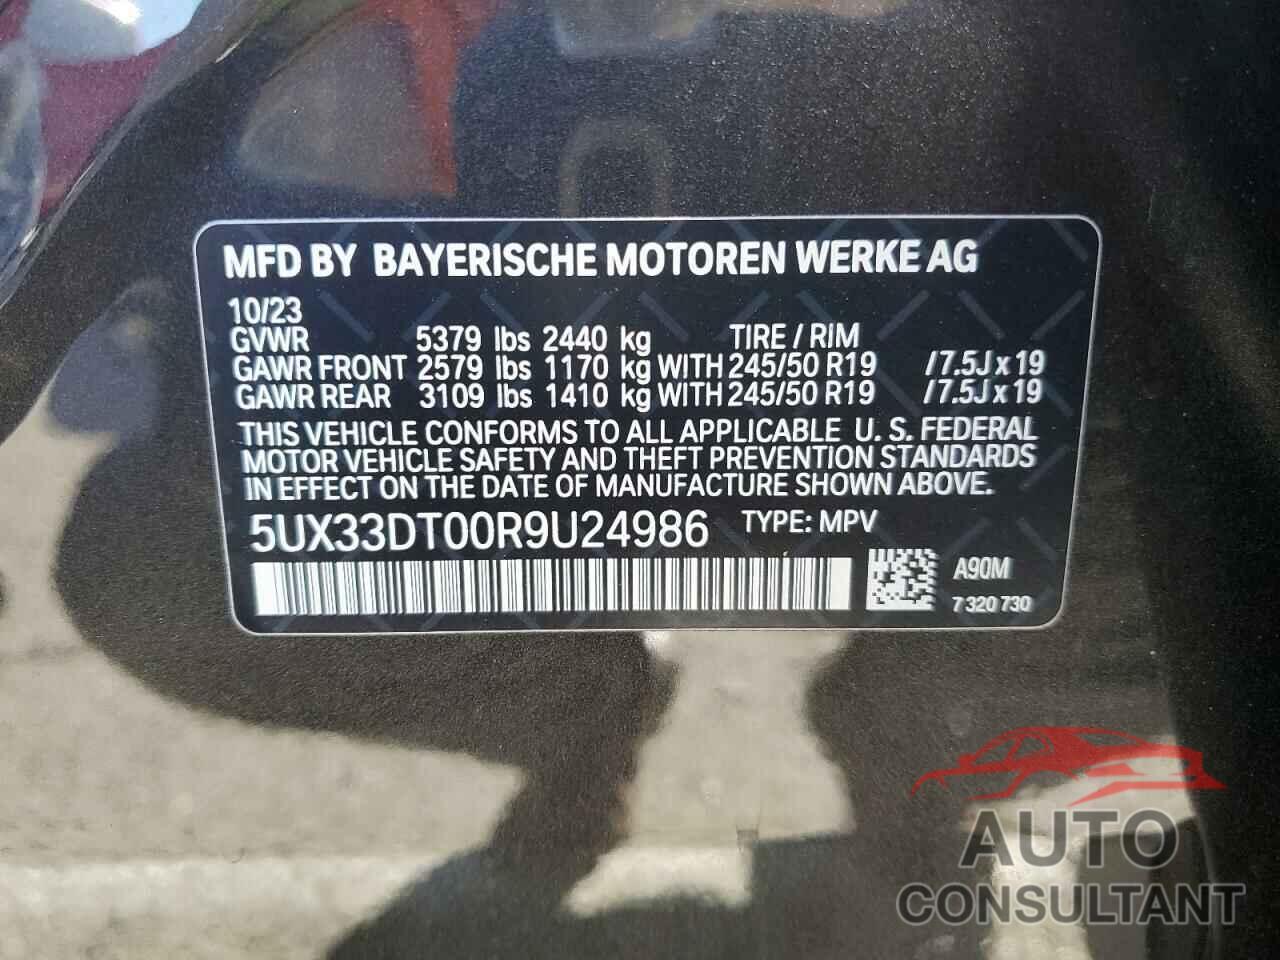 BMW X4 2024 - 5UX33DT00R9U24986